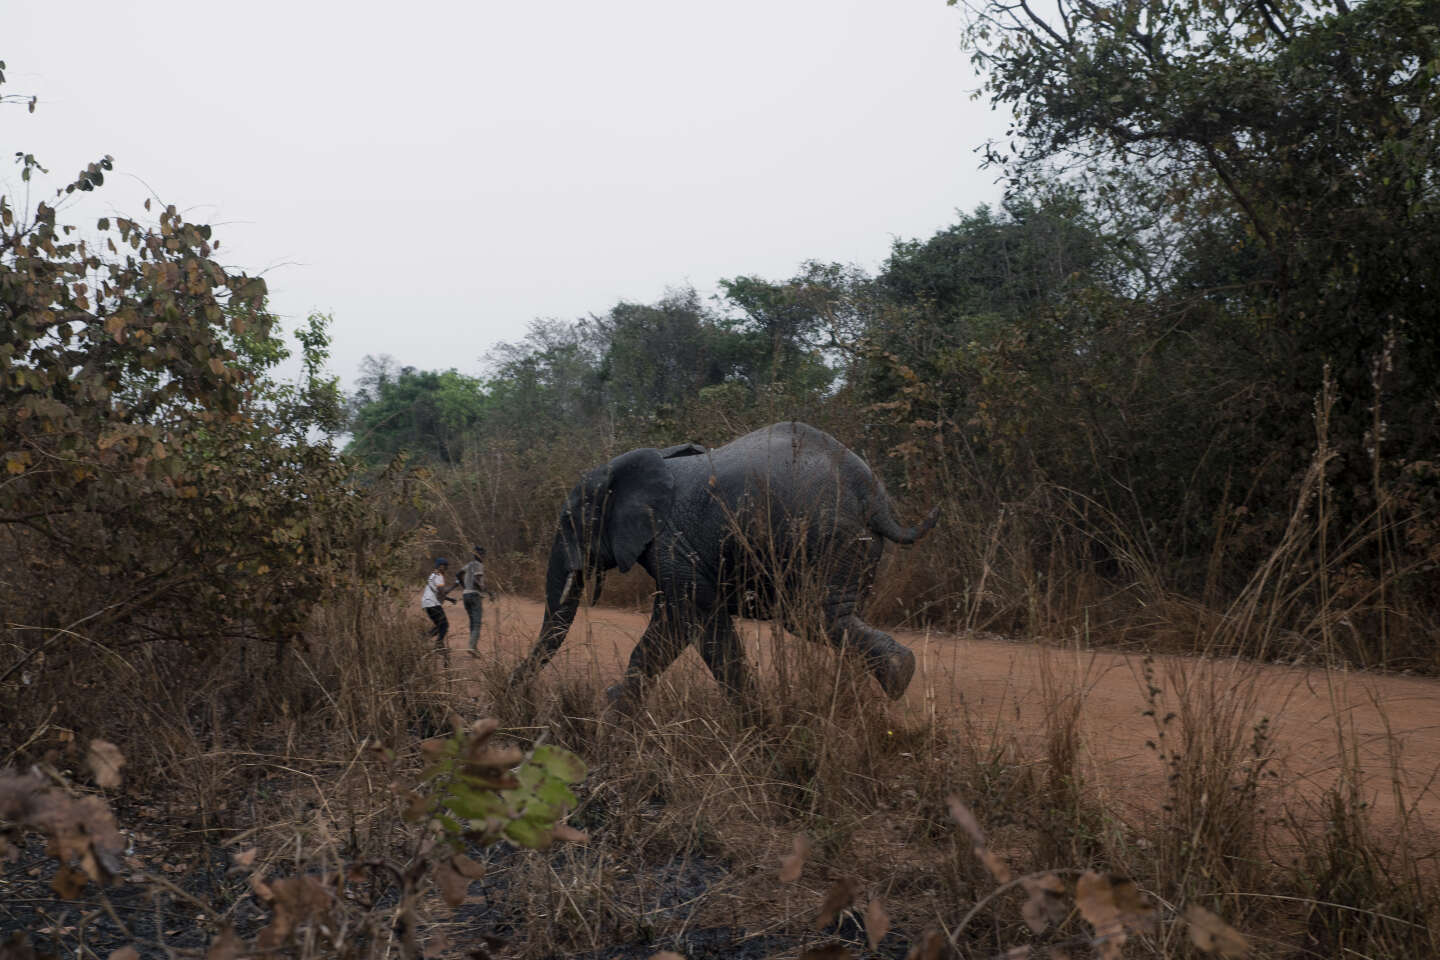 Les derniers éléphants de Côte d’Ivoire, adulés mais mal protégés